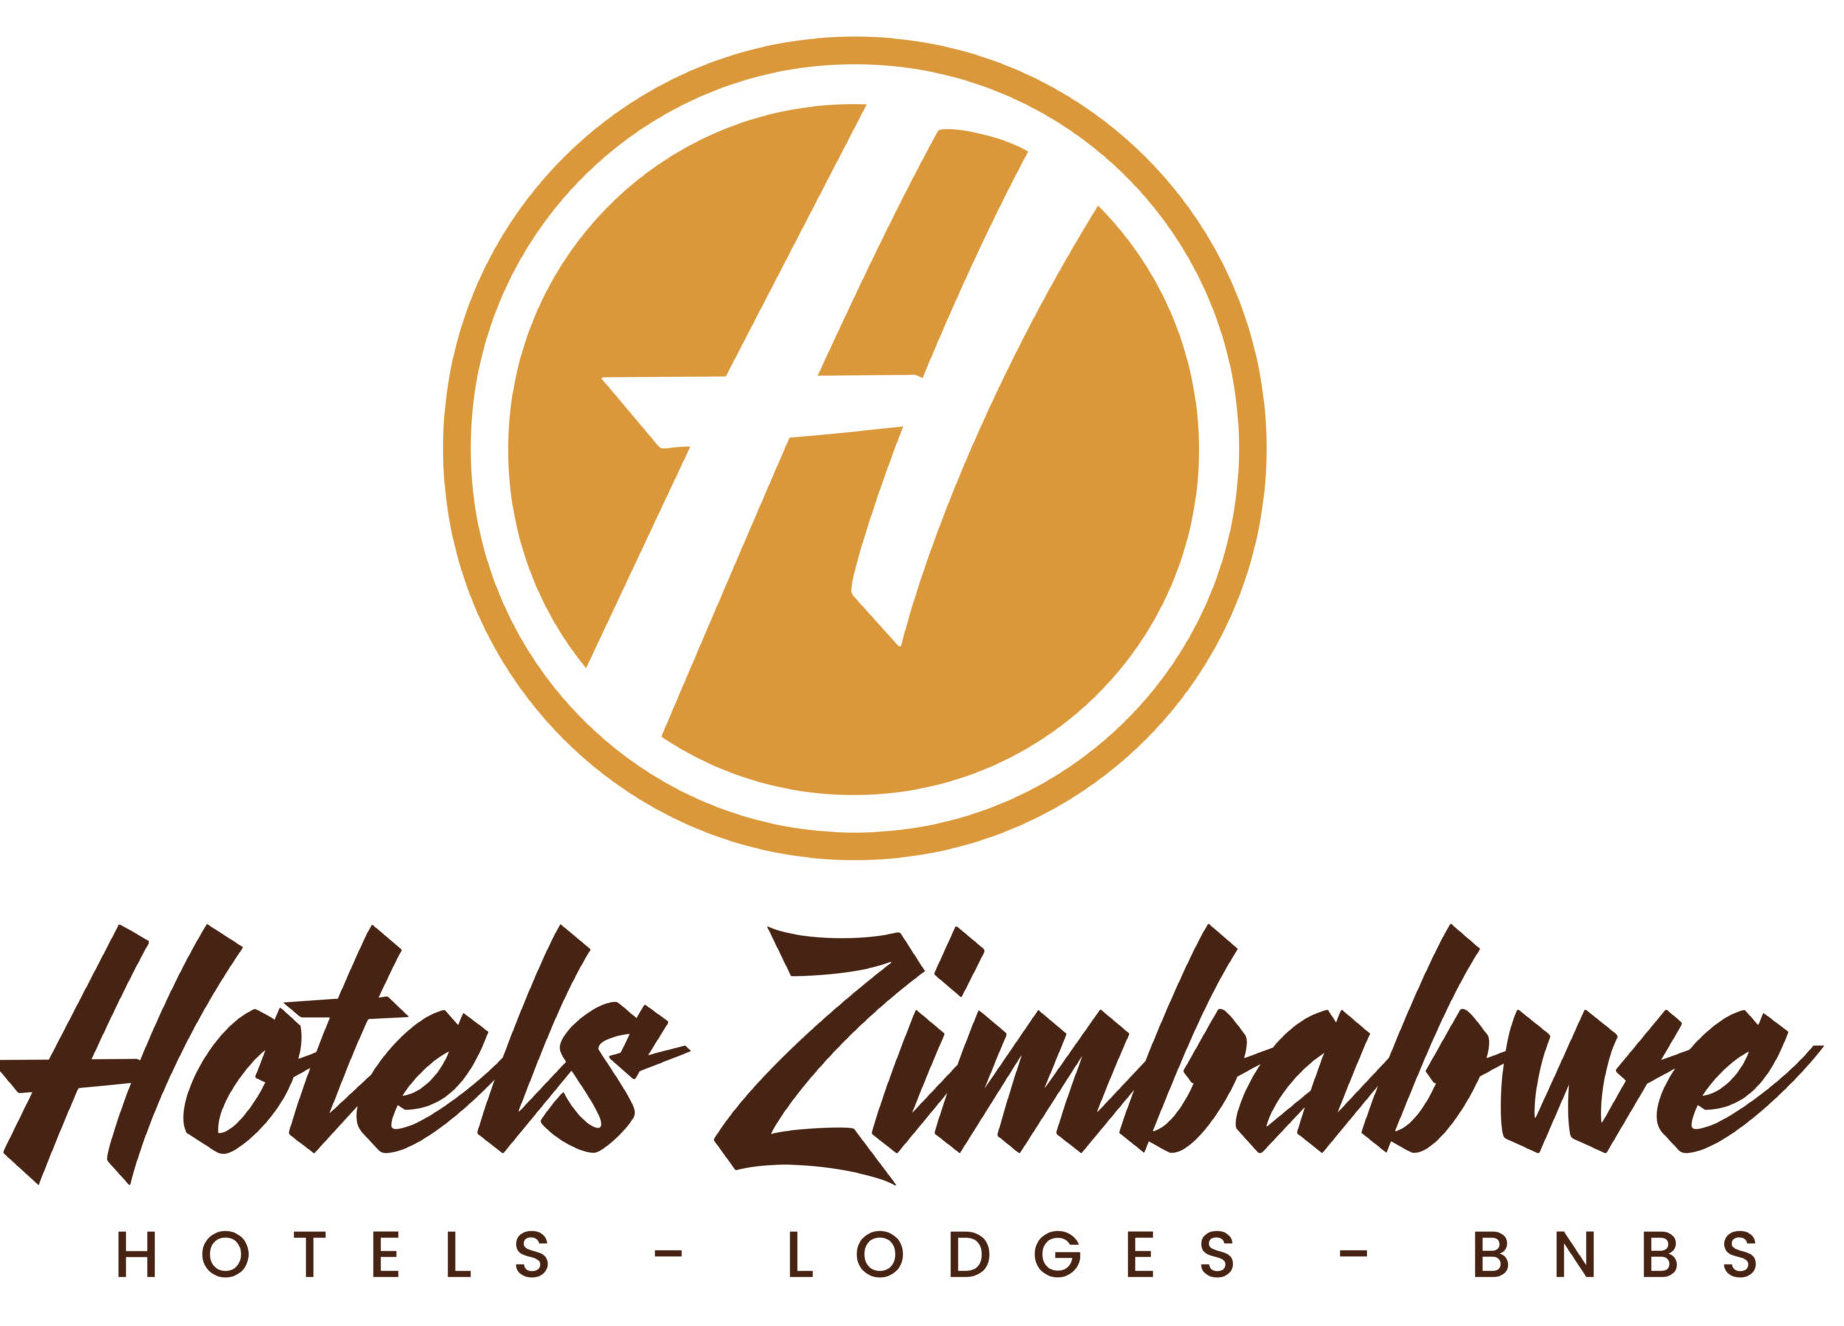 Hotels Zimbabwe | Hotels-Lodges-B&Bs